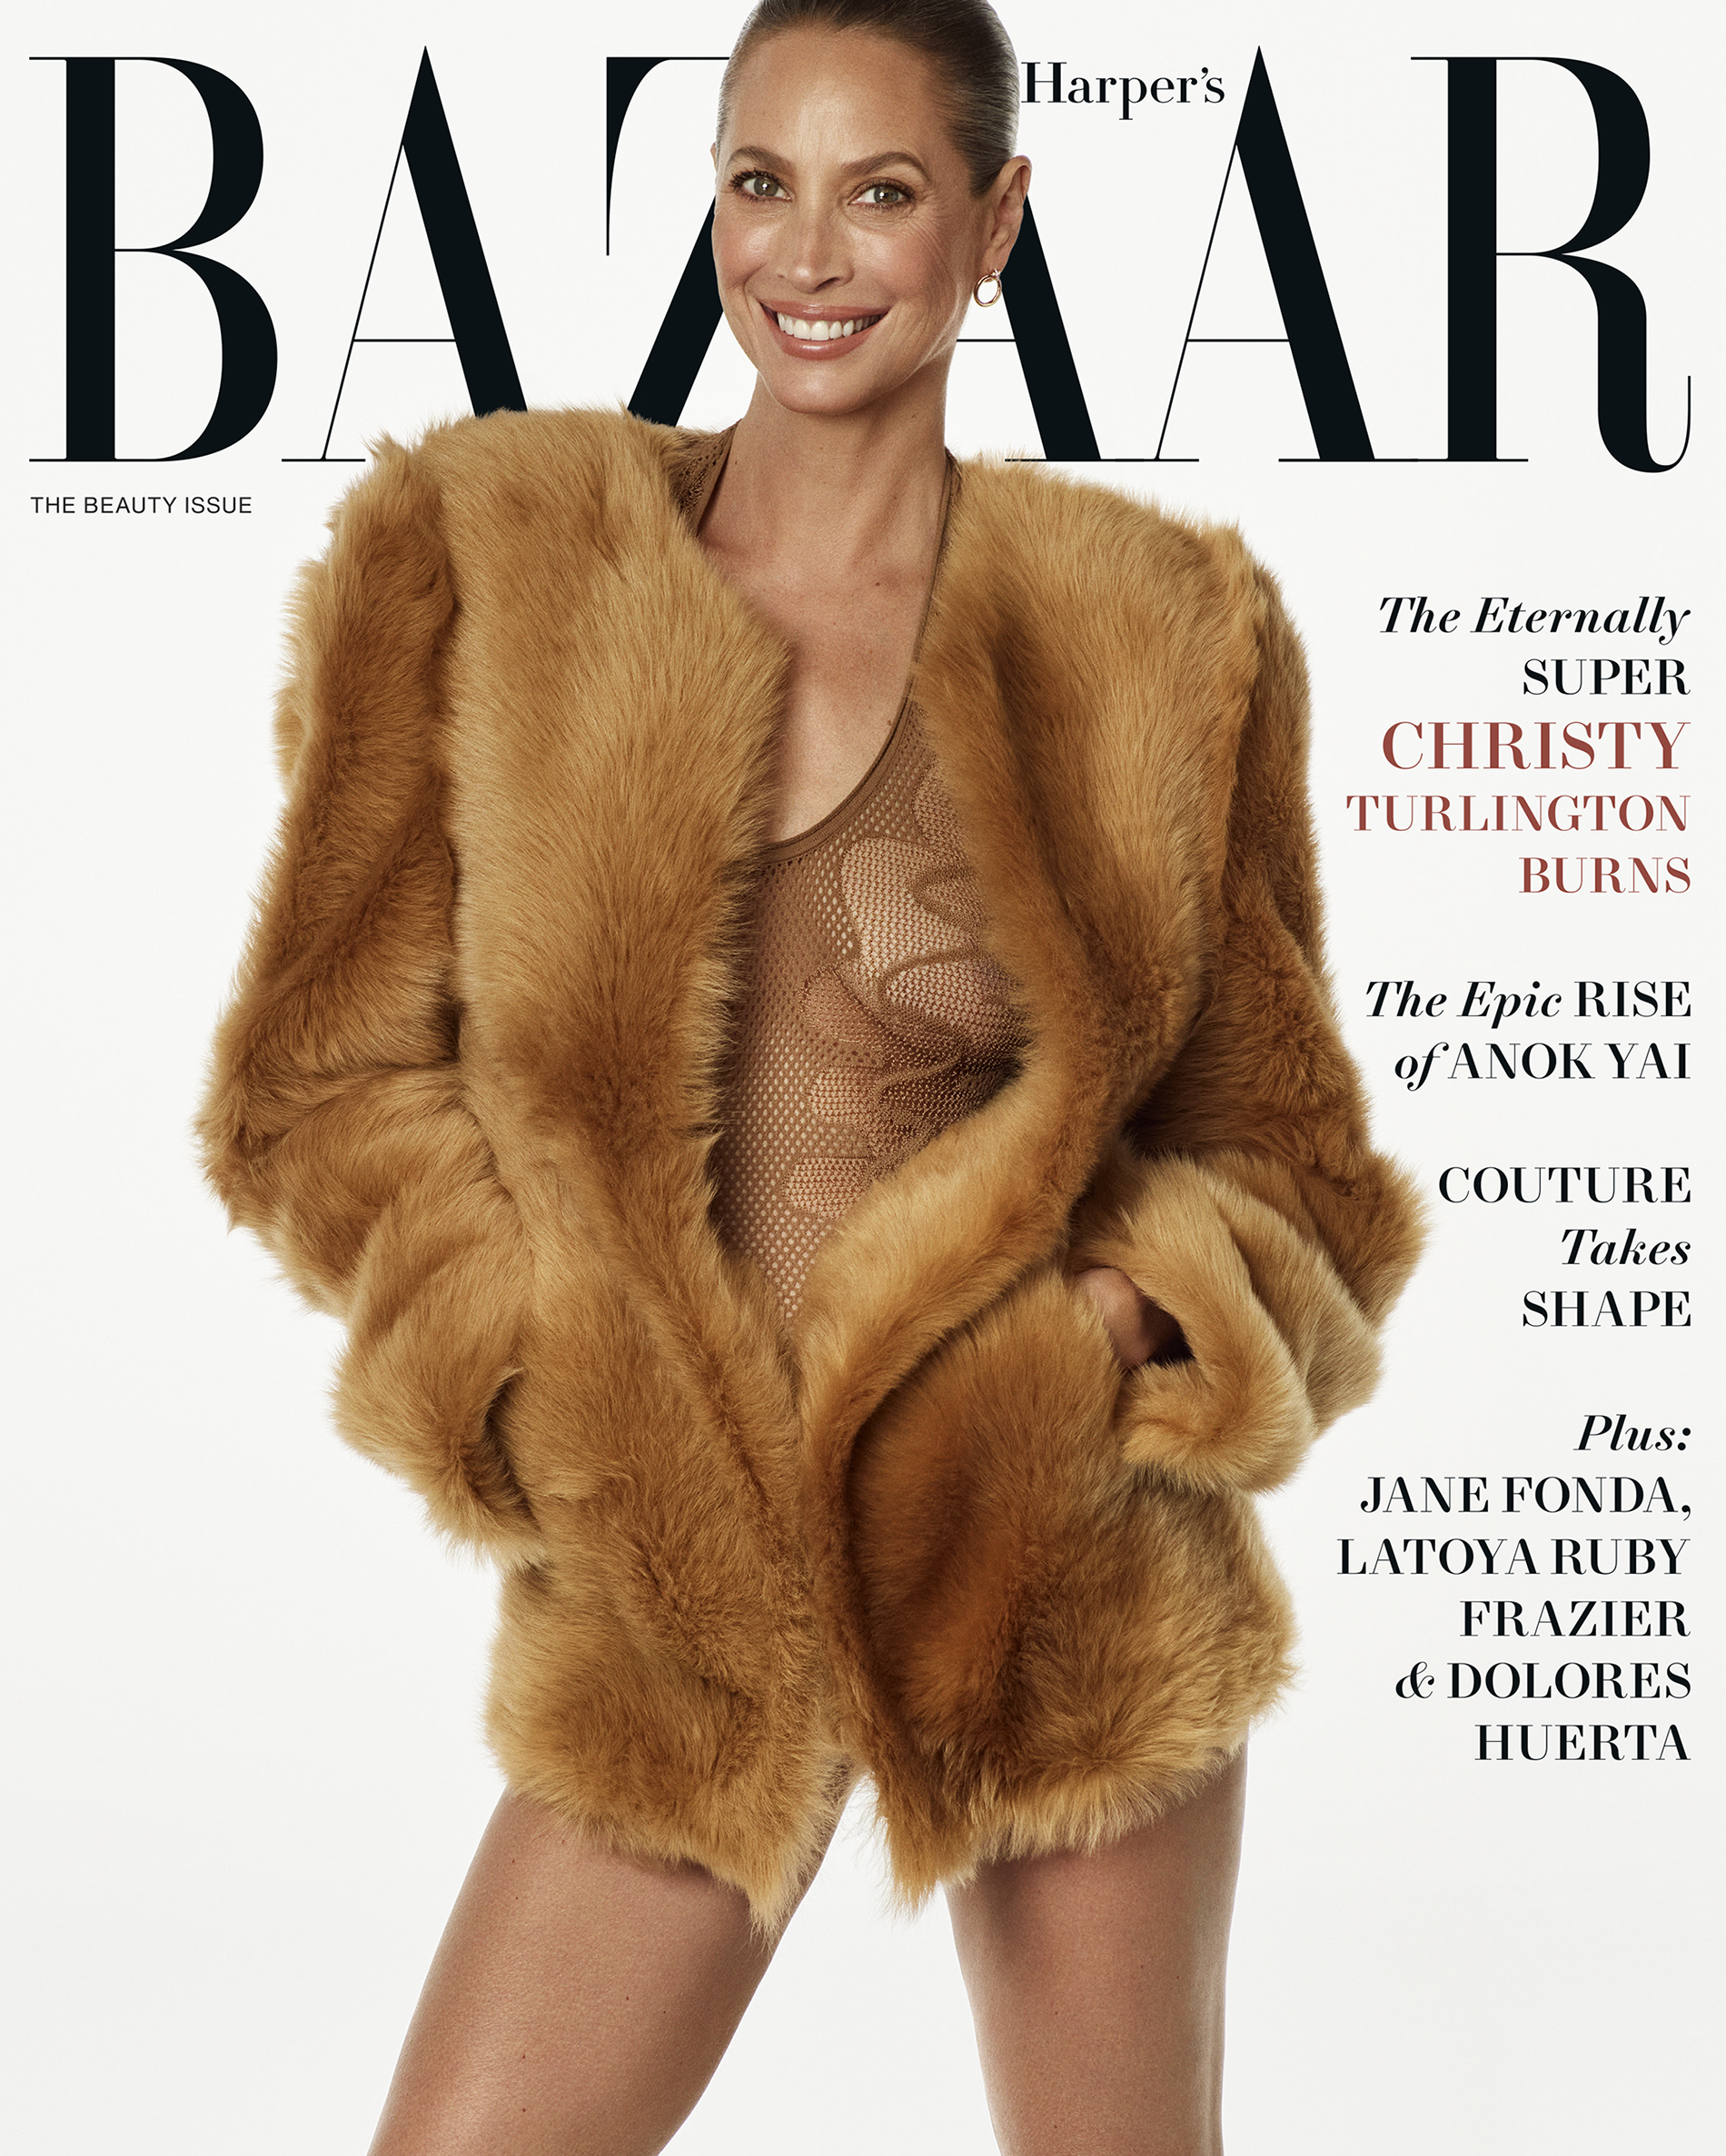 Christy zierte das Cover von Harper's Bazaar in einem braunen Kunstpelzmantel